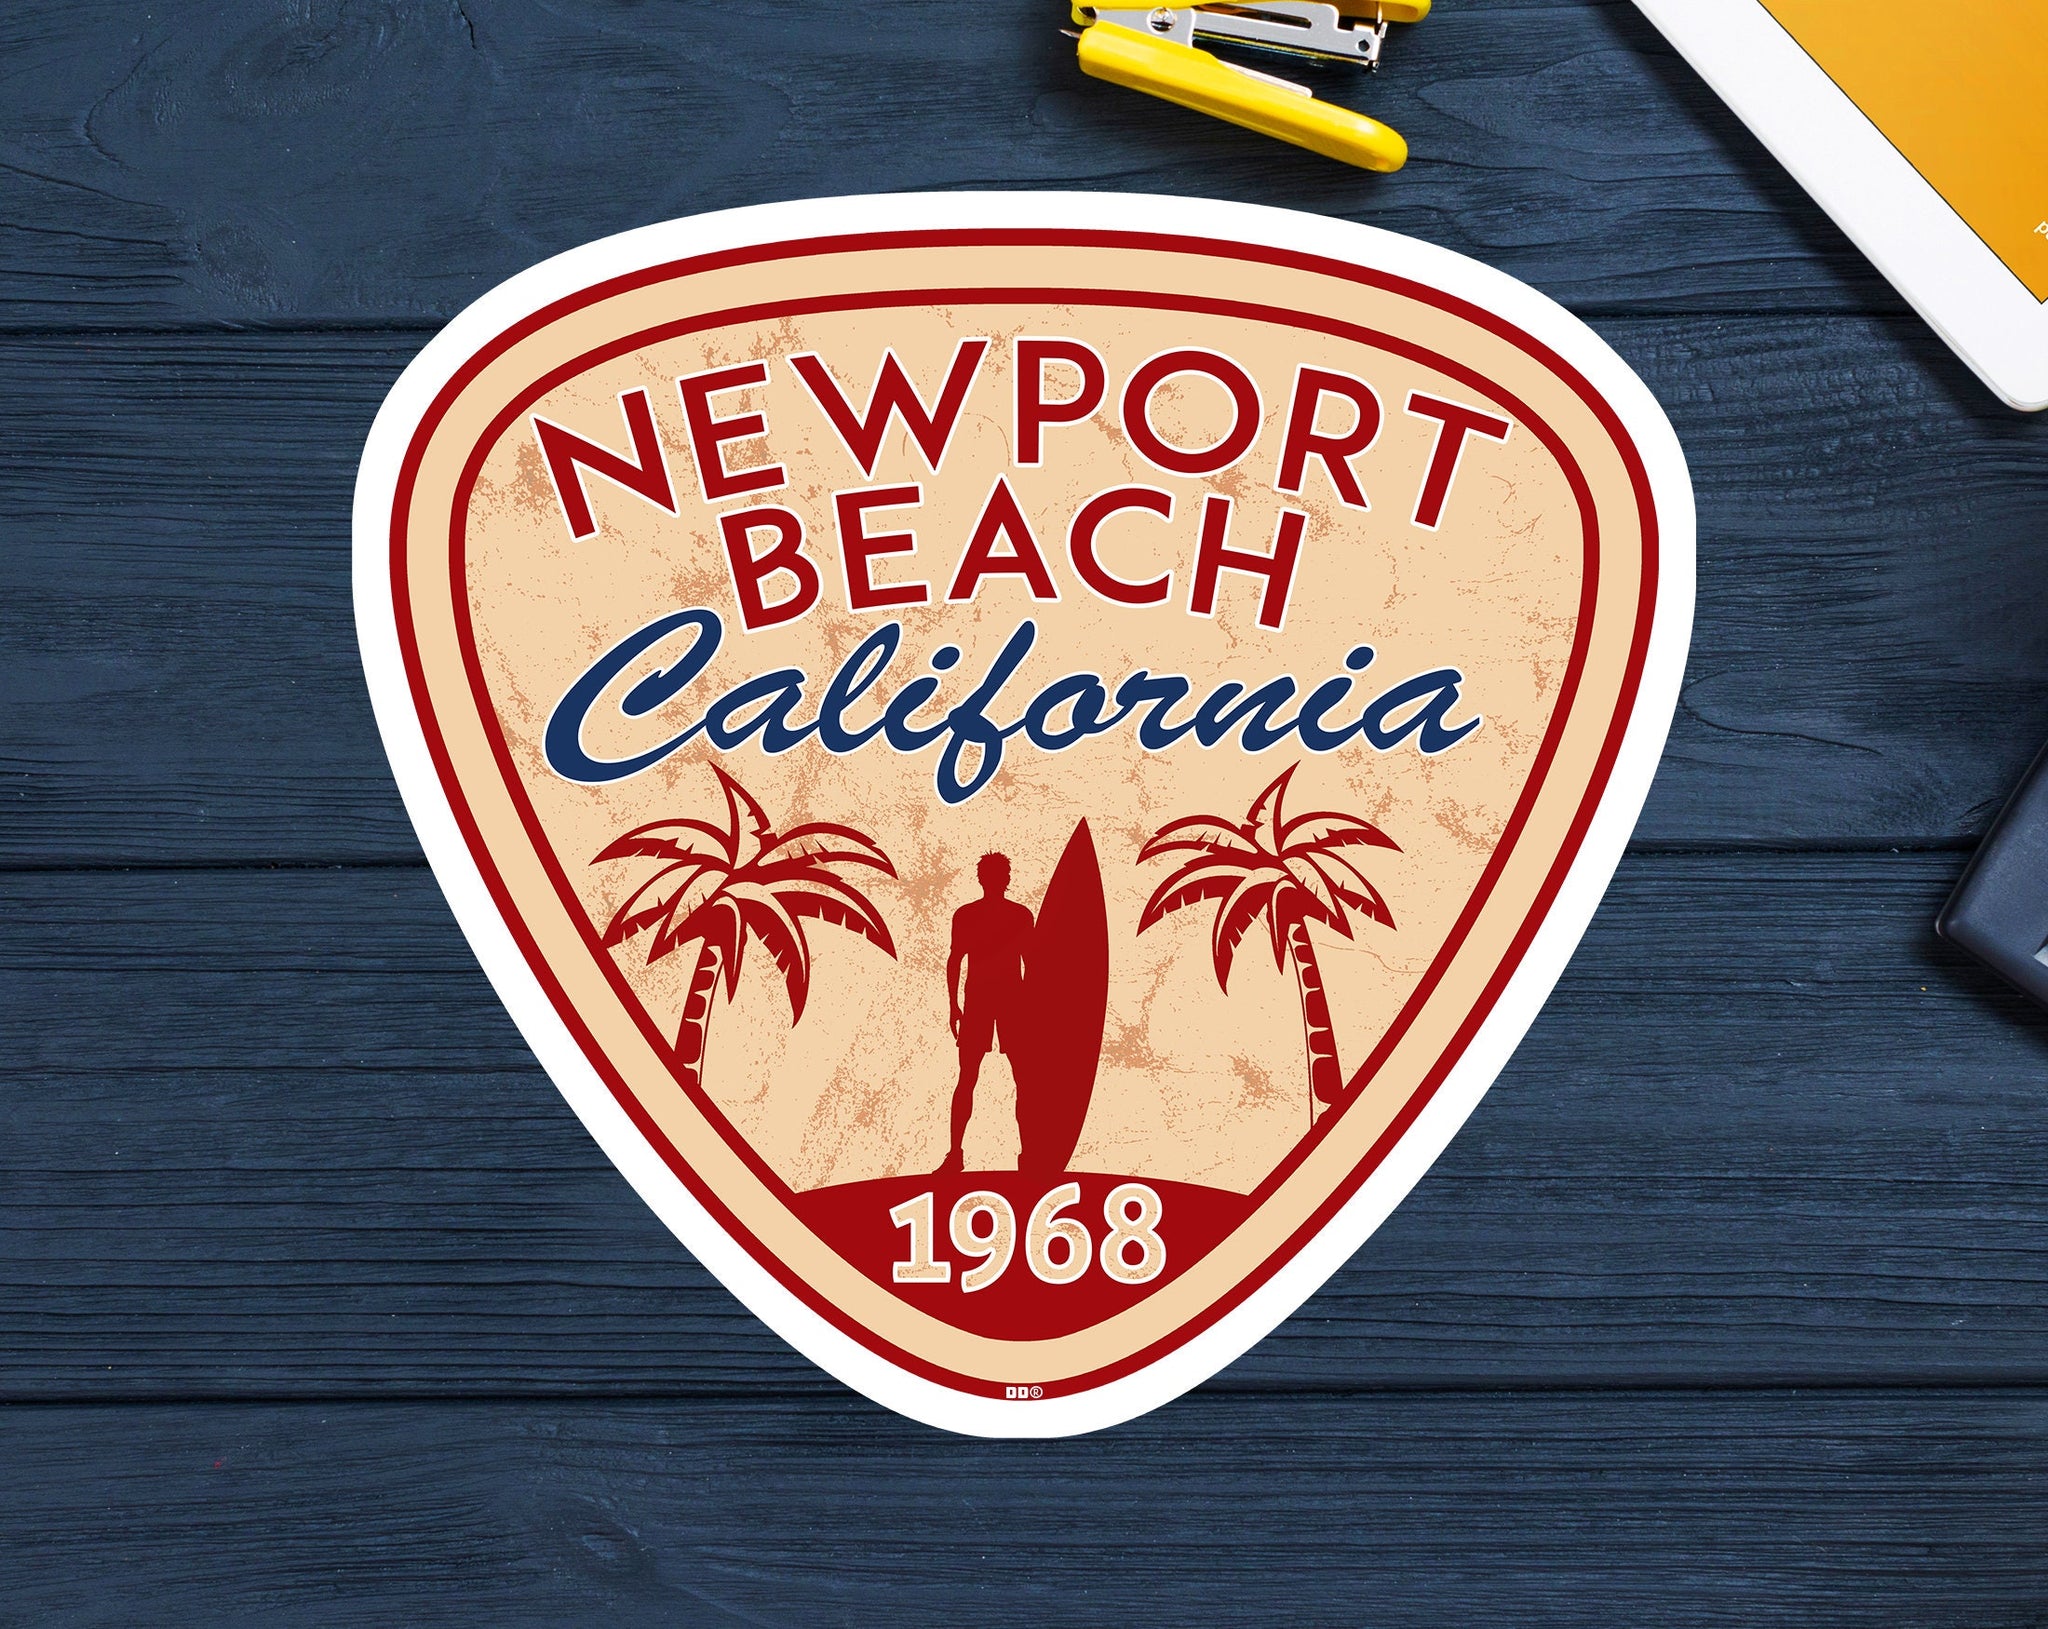 Newport Beach California Sticker Decal Beach Ocean Surfing Vinyl 3" Surfer